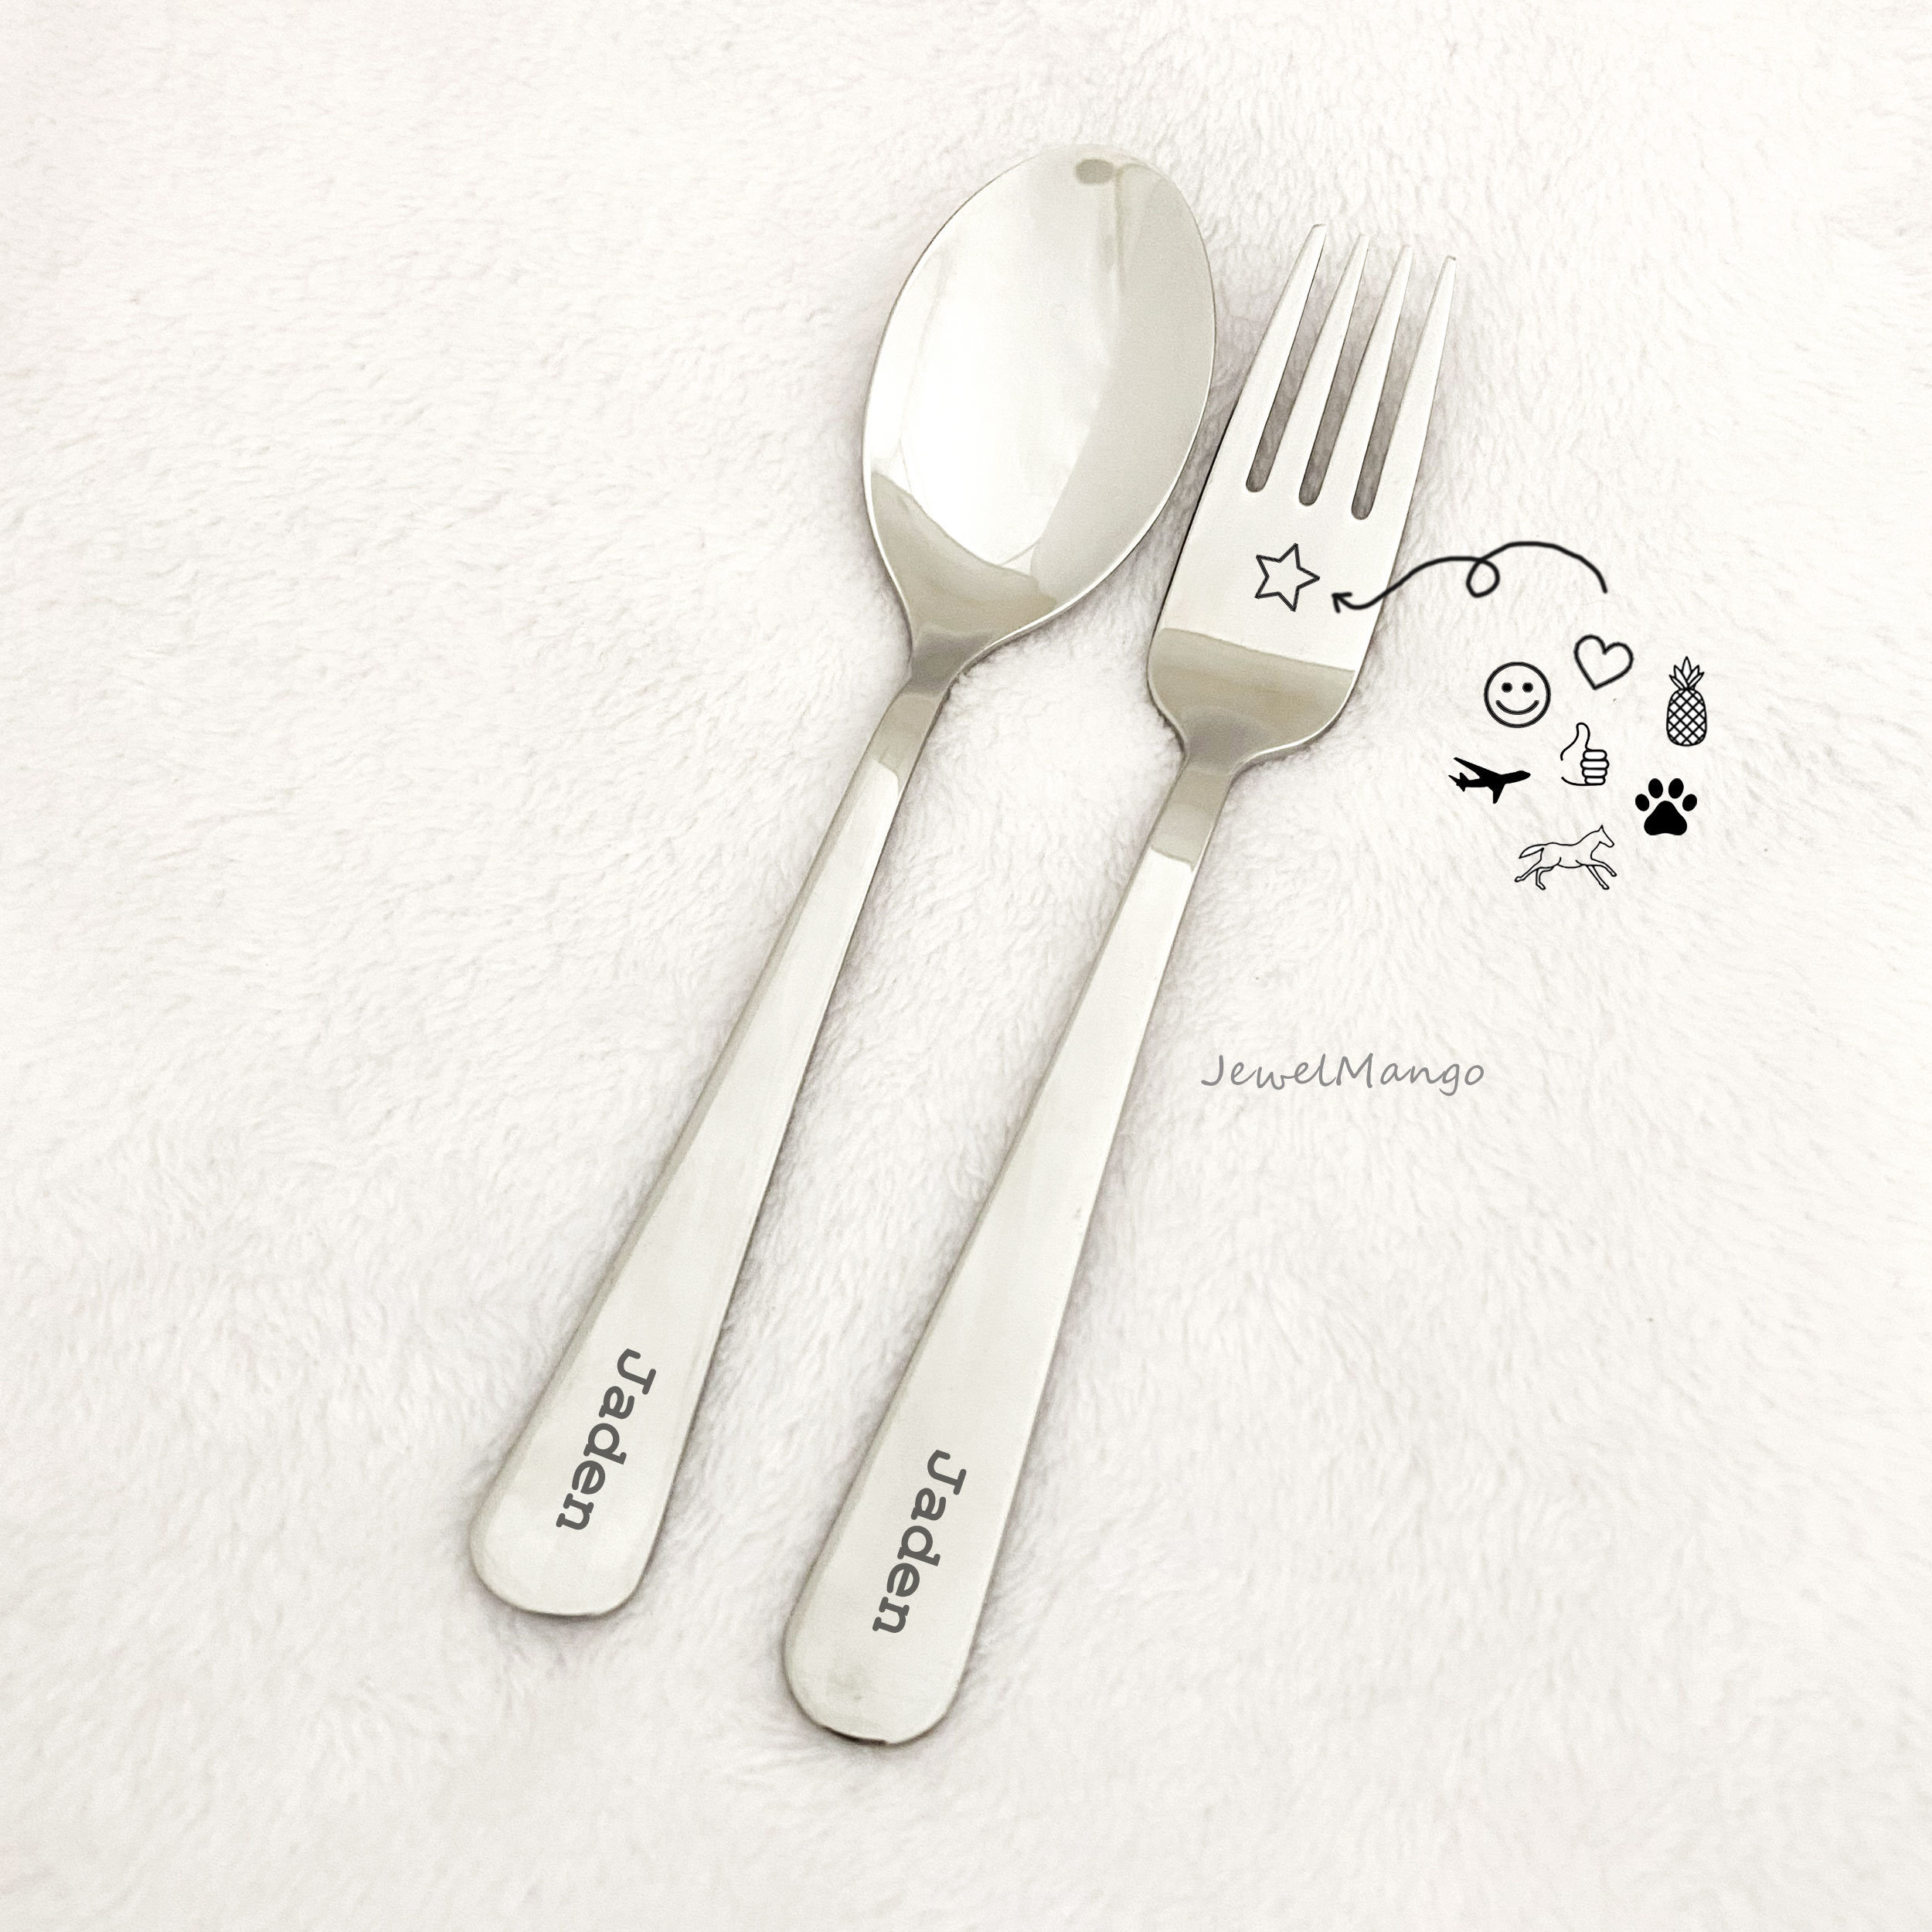 boyfriend reach for the fork｜TikTok Search